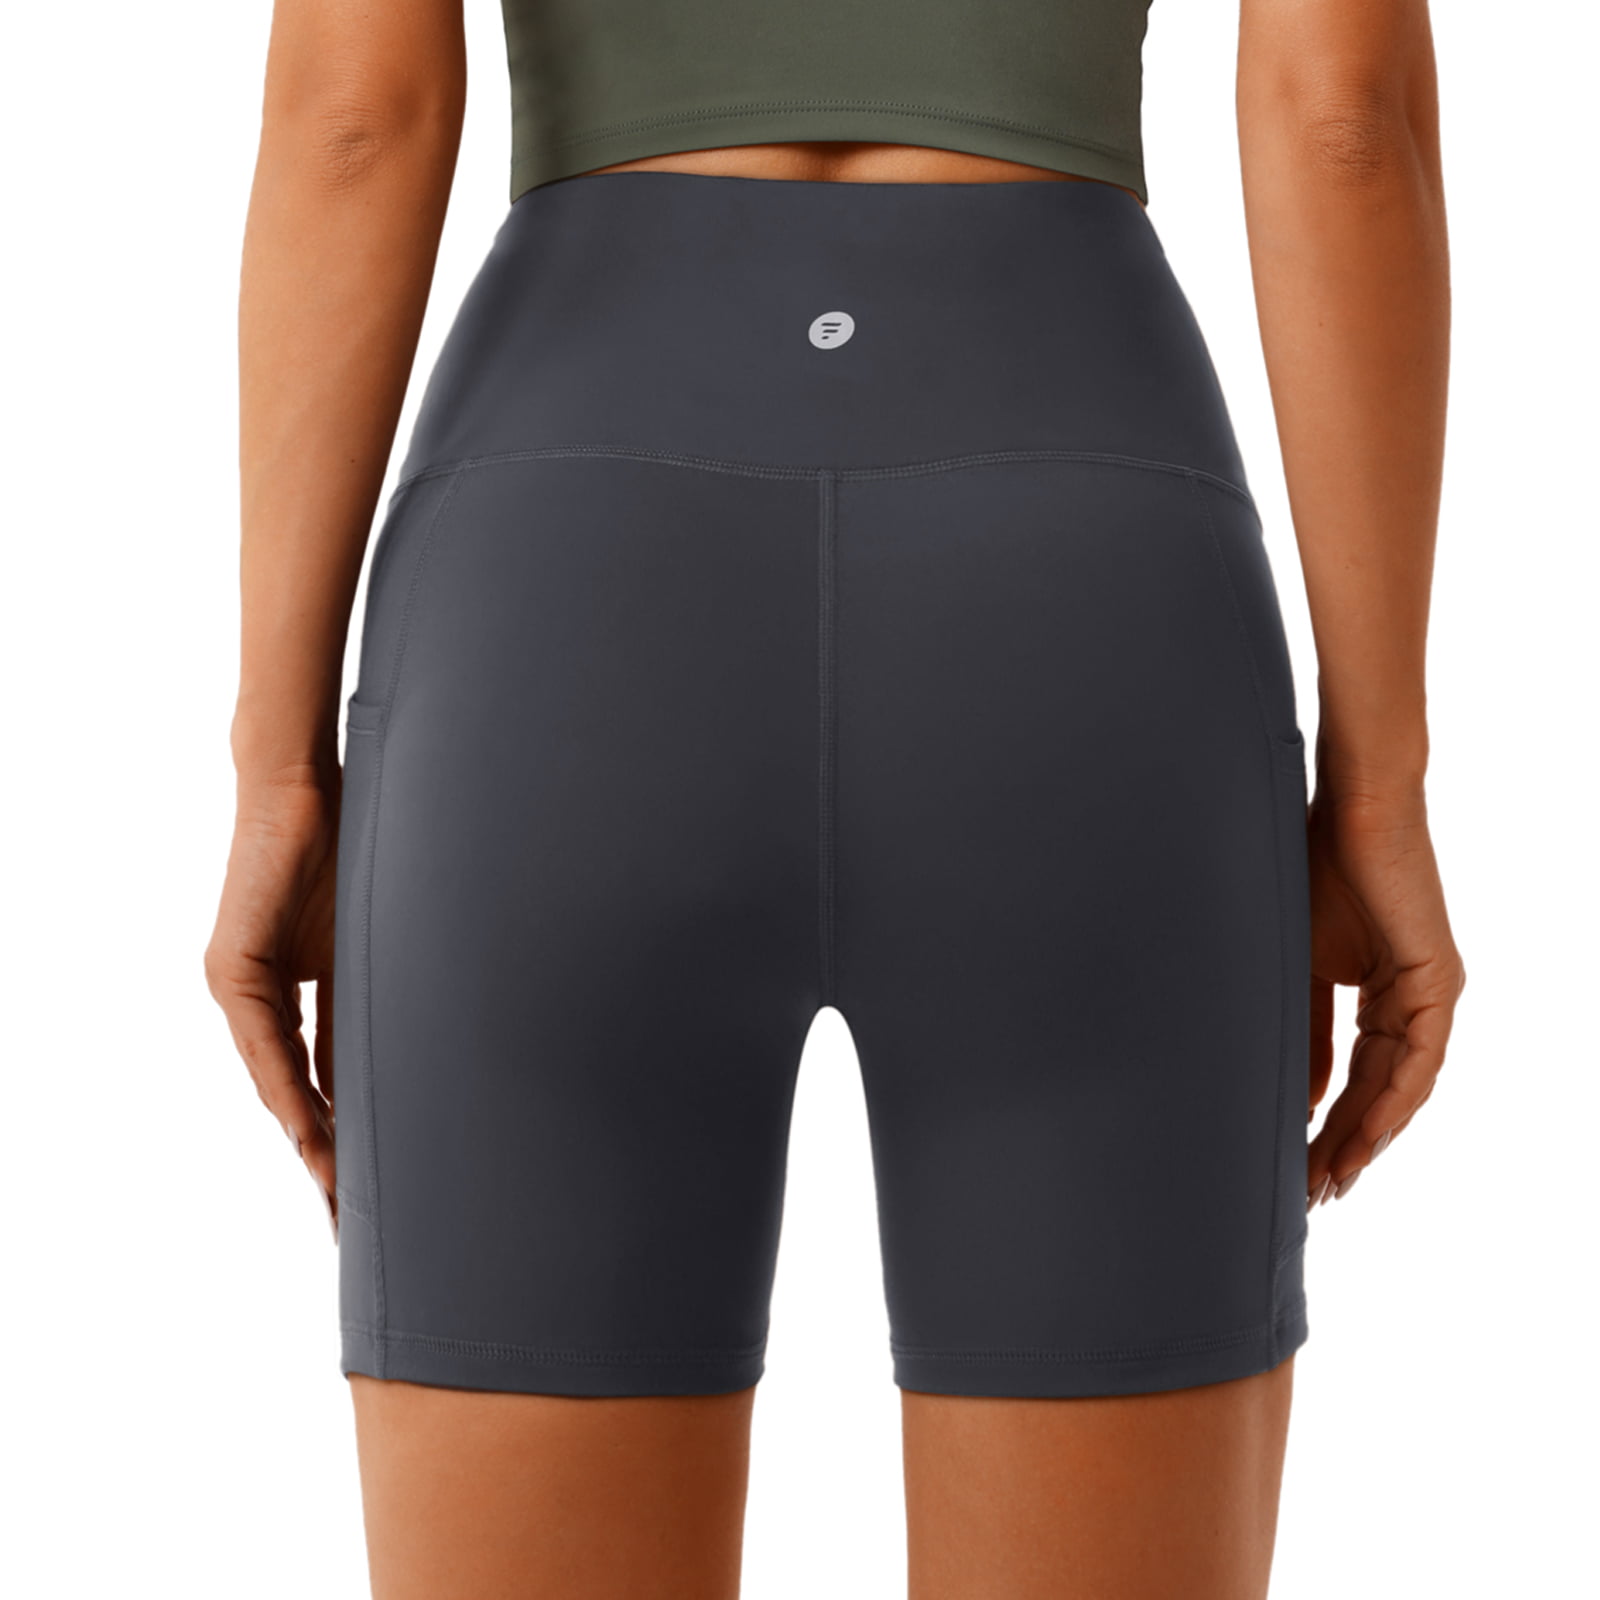 FULLSOFT 7 Pack Biker Shorts for Women-5''/ 8'' High Waisted Workout  Running Athletic Spandex Soft Gym Short Yoga Leggings